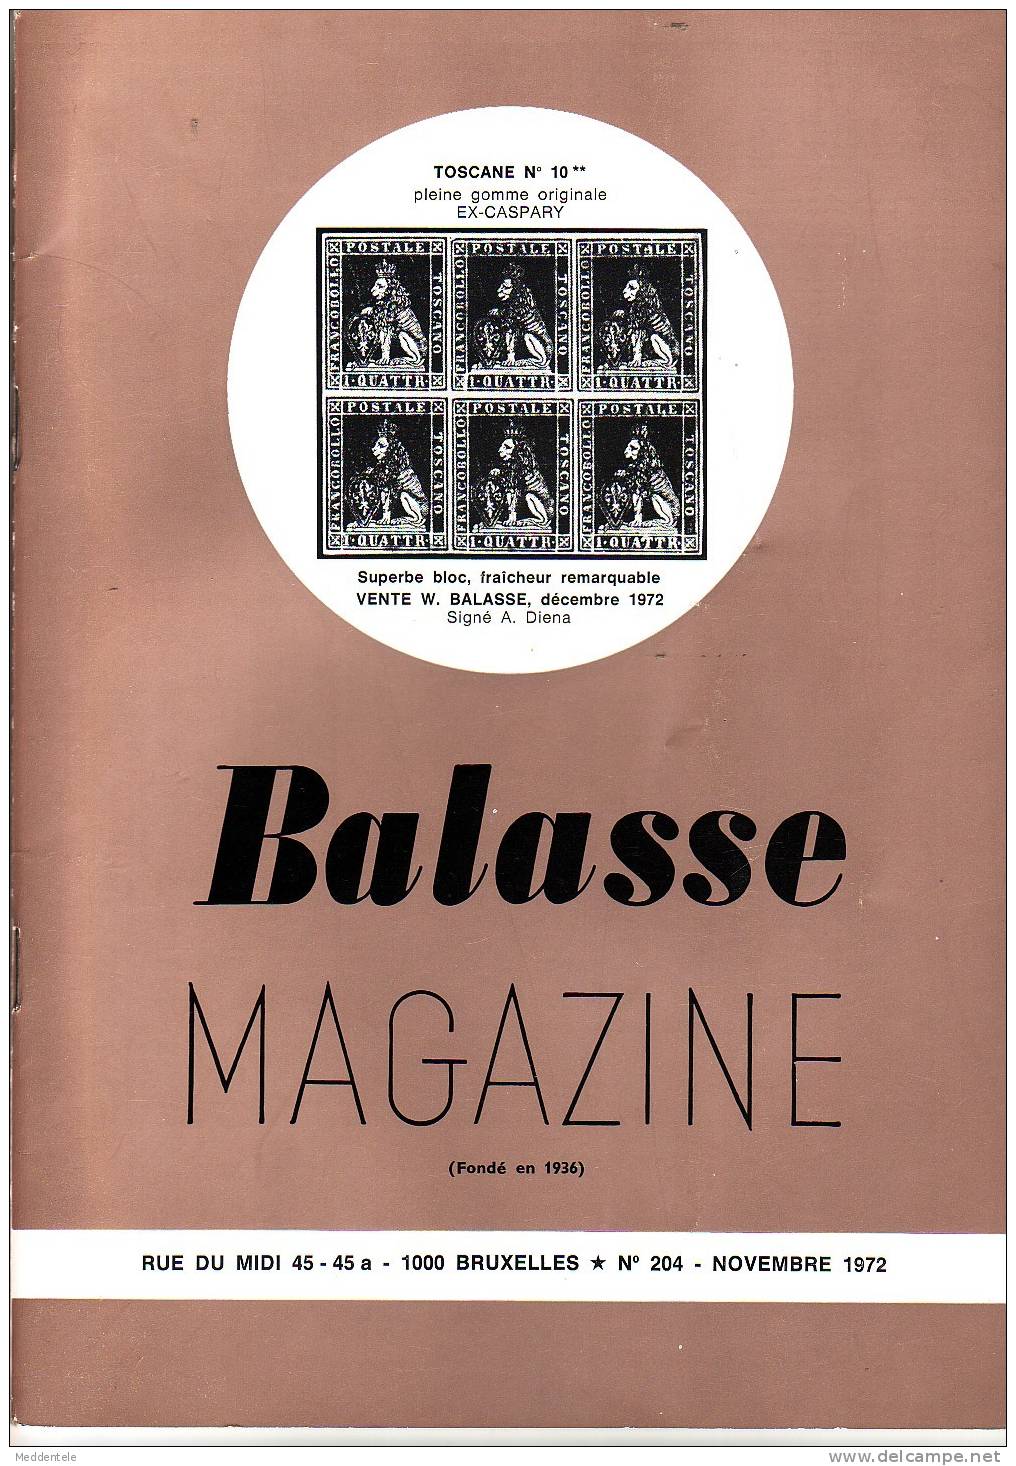 BALASSE MAGAZINE N° 204 - Français (àpd. 1941)